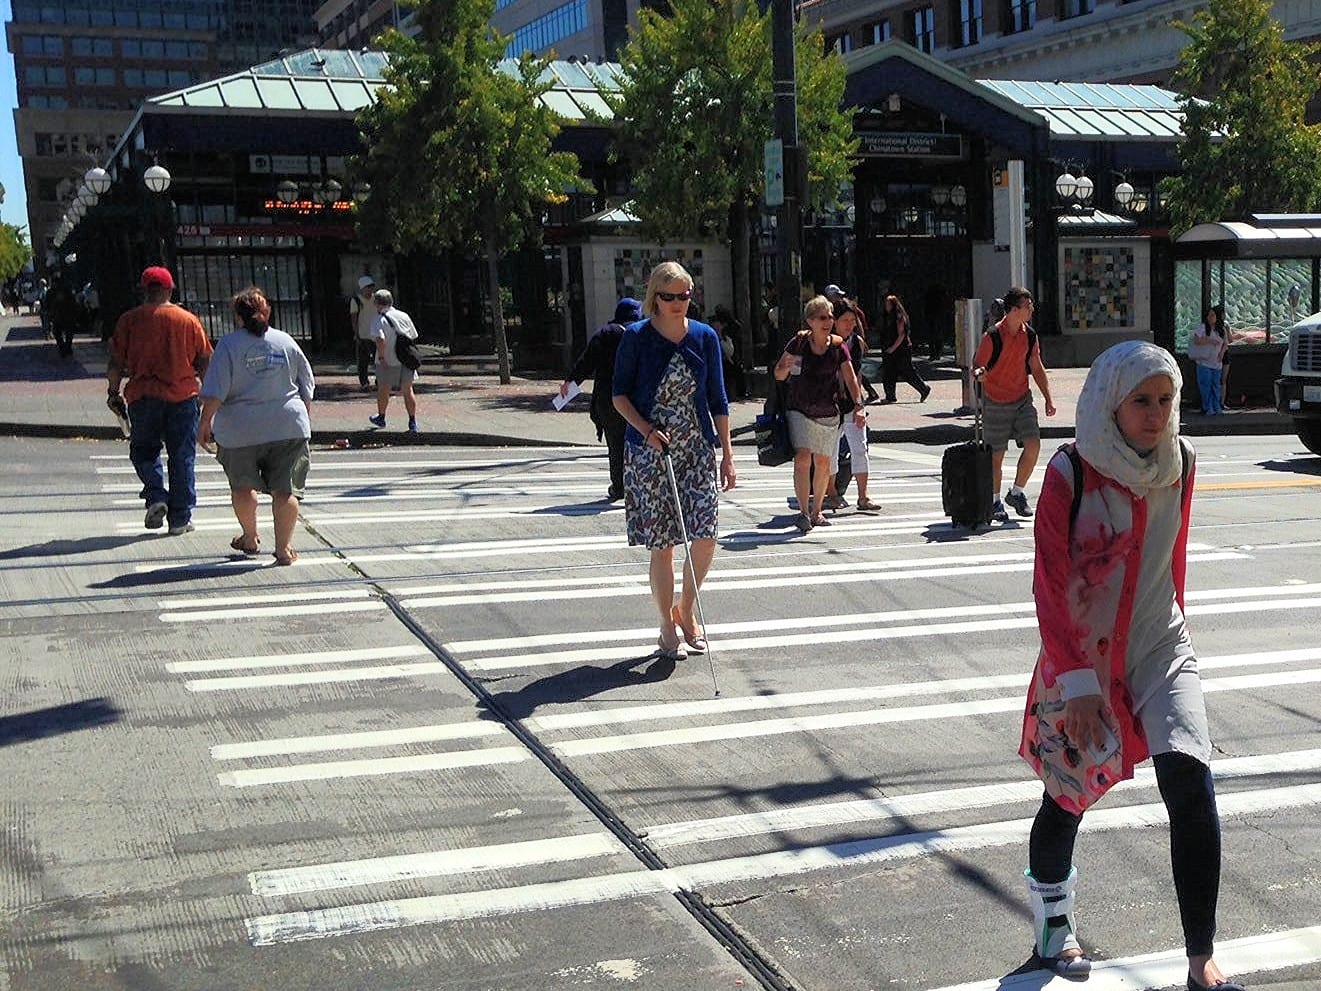 People walking across a crosswalk near a light rail station.